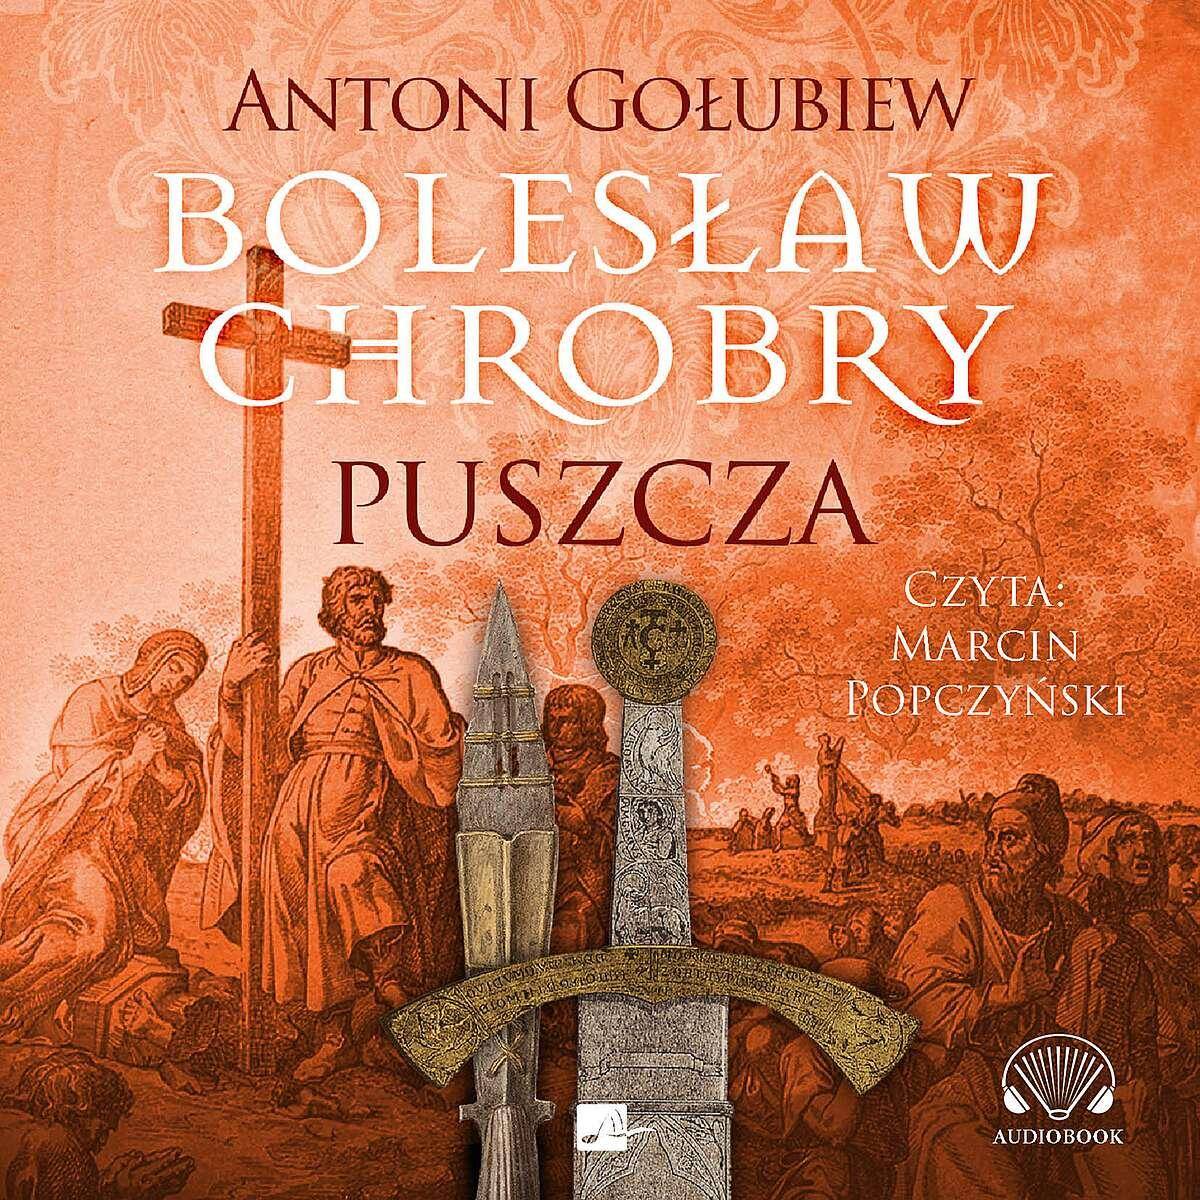 CD MP3 Puszcza. Bolesław Chrobry. Tom 1